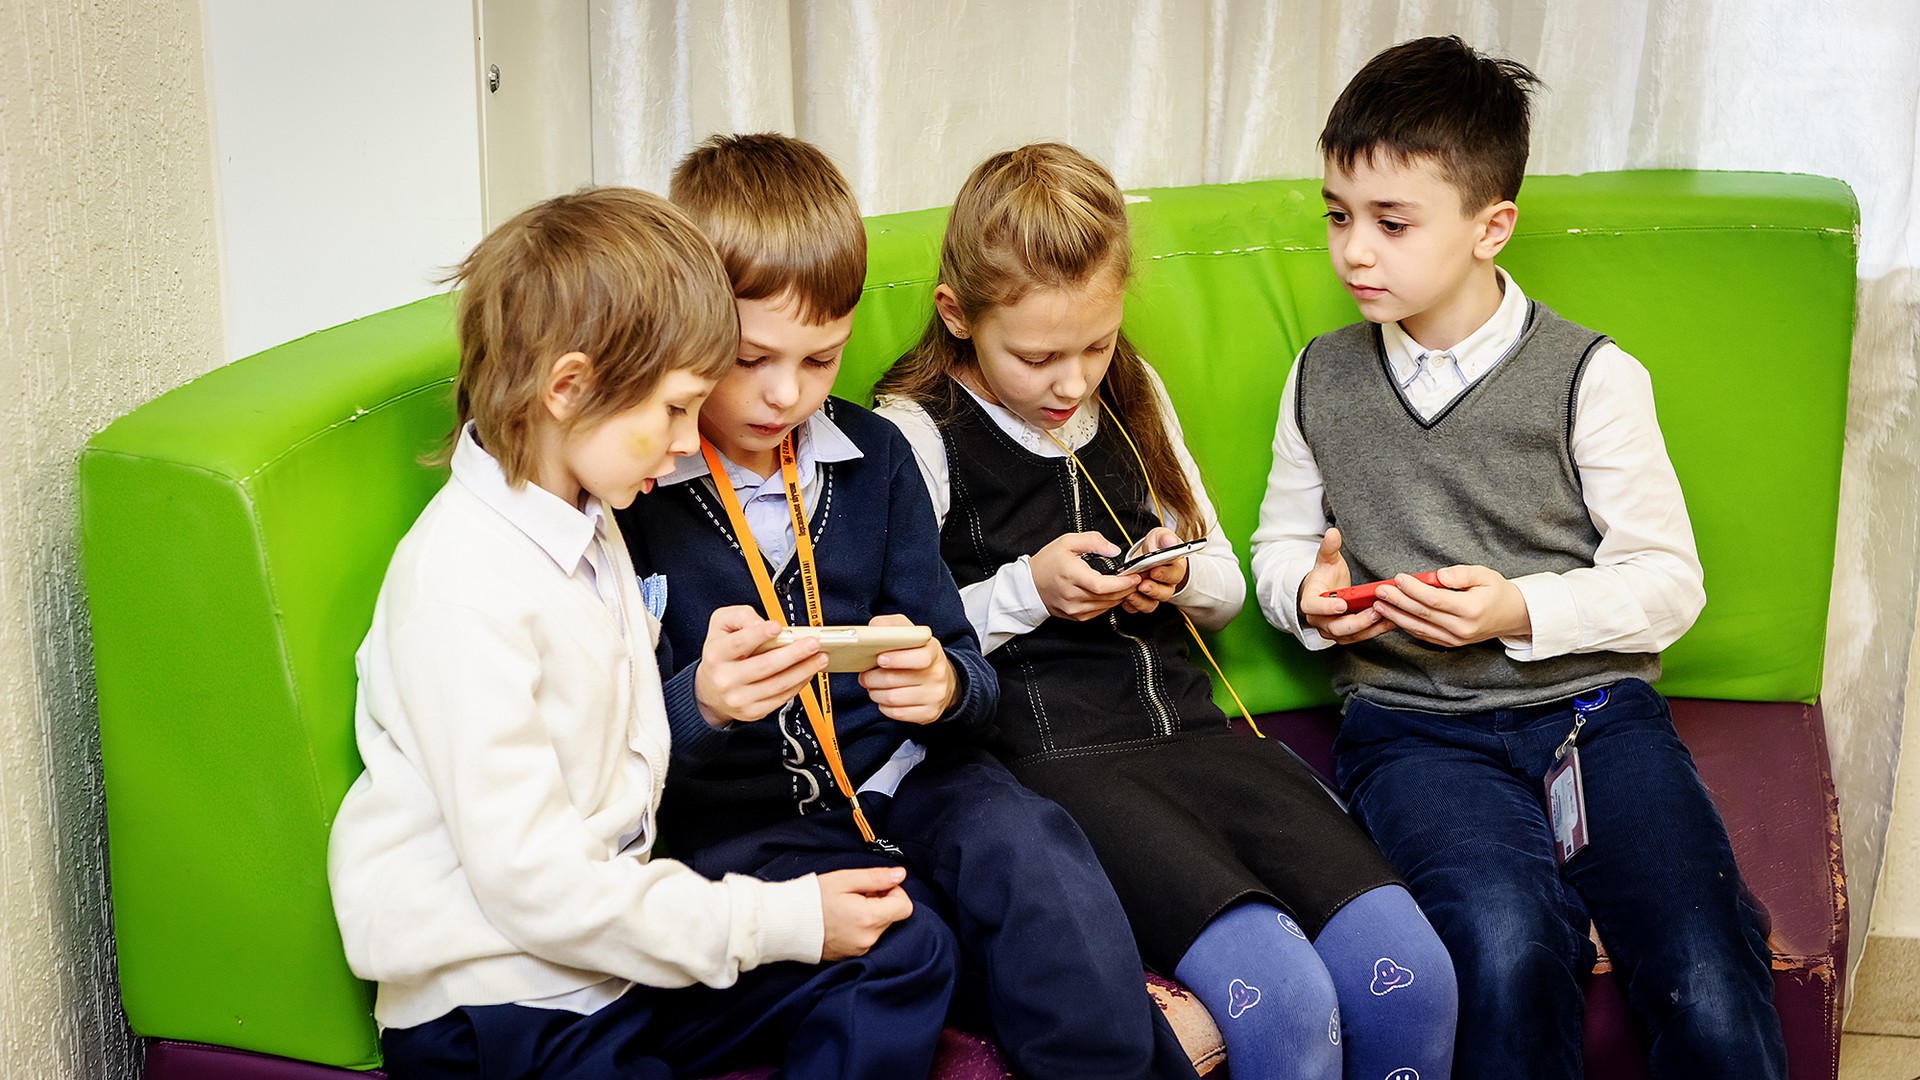 В Госдуму внесен проект об ограничении использования смартфонов в школах